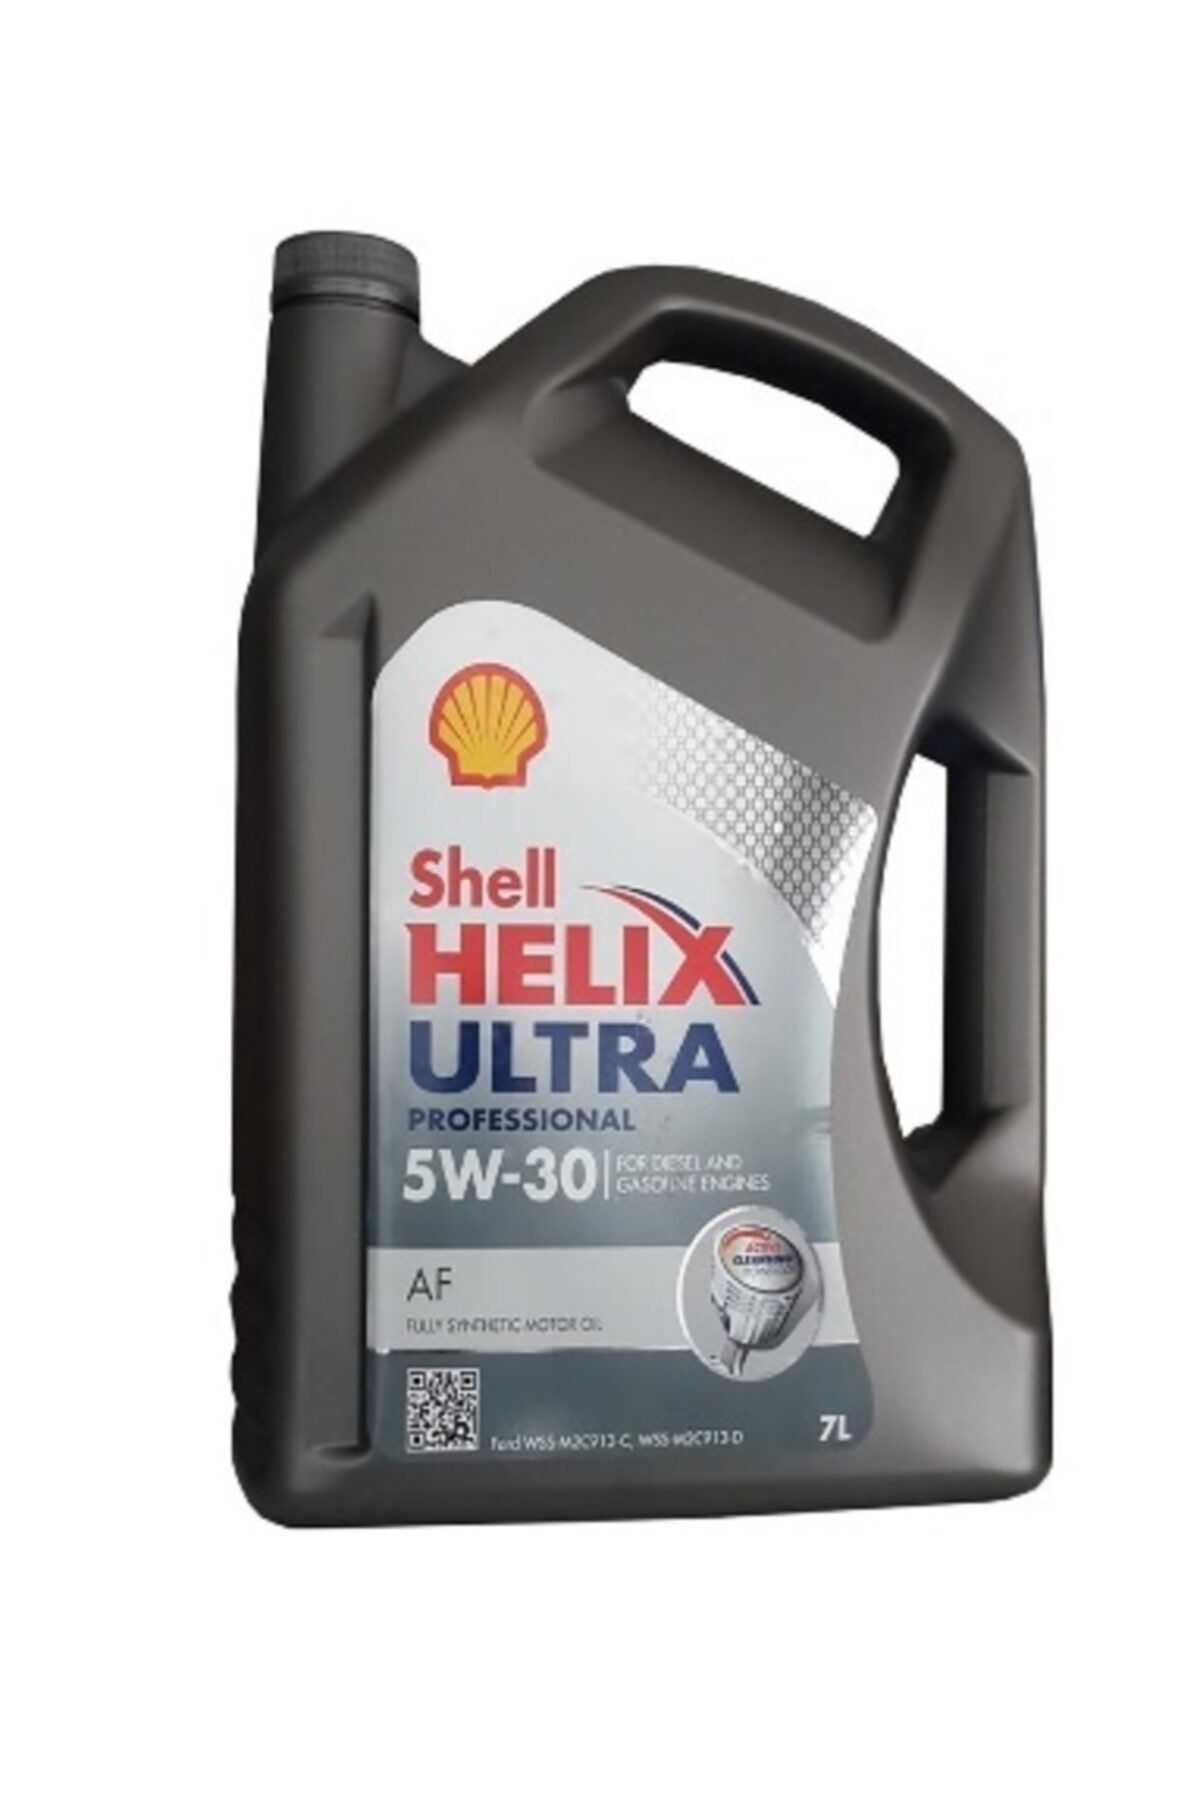 Shell Helix Ultra Professional Af 5w-30 7 Lt